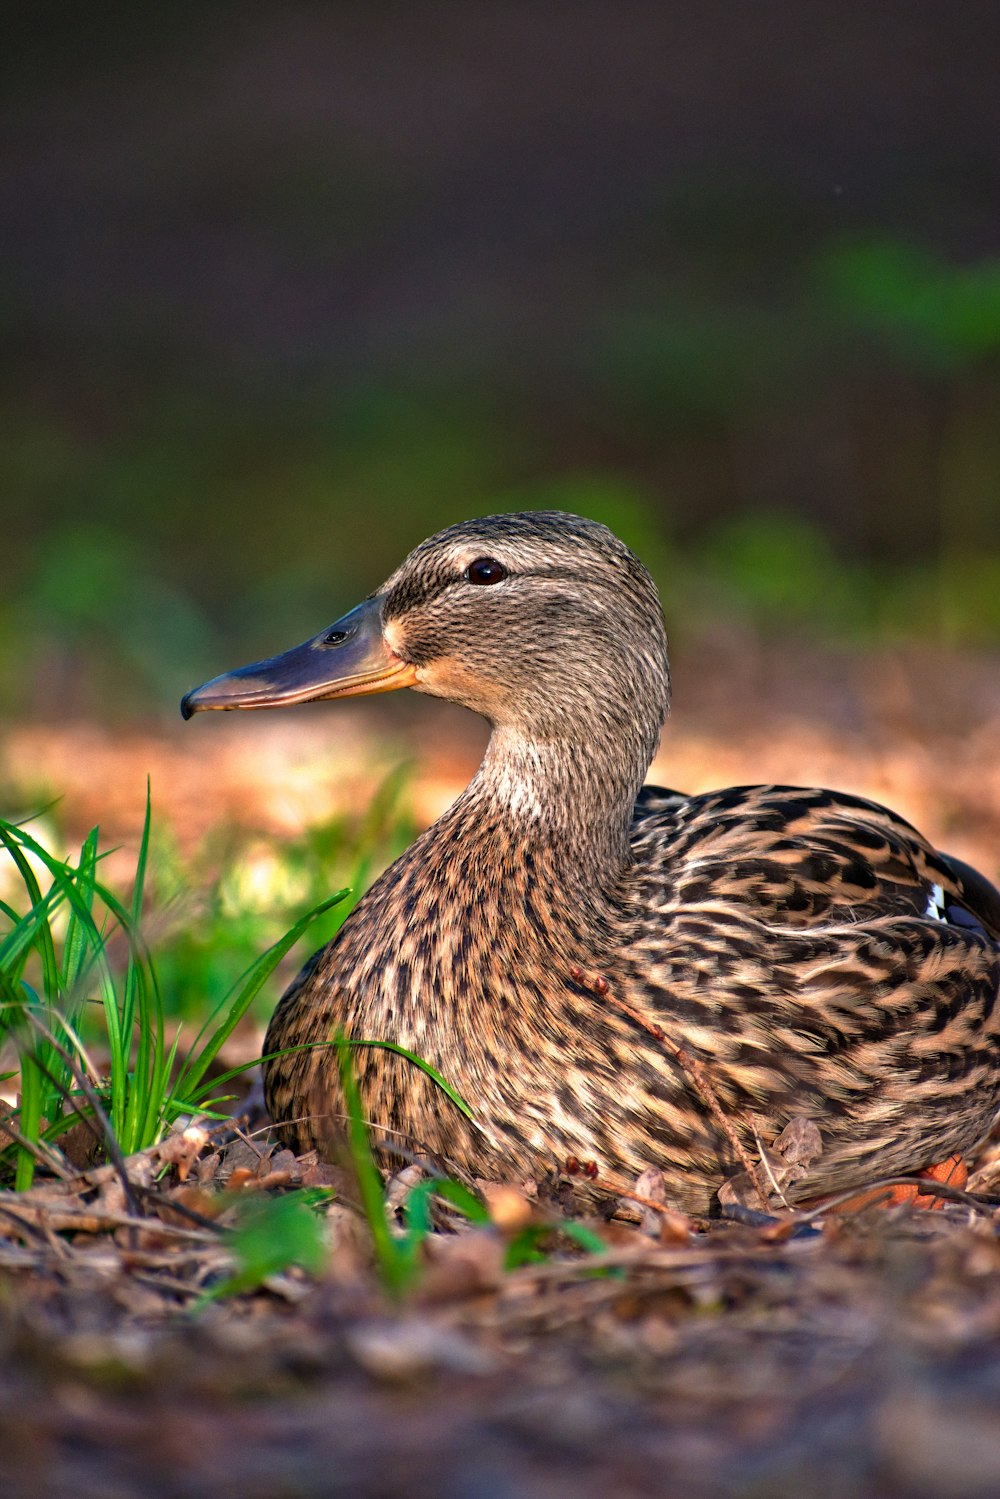 eine Ente, die auf dem Boden im Gras sitzt